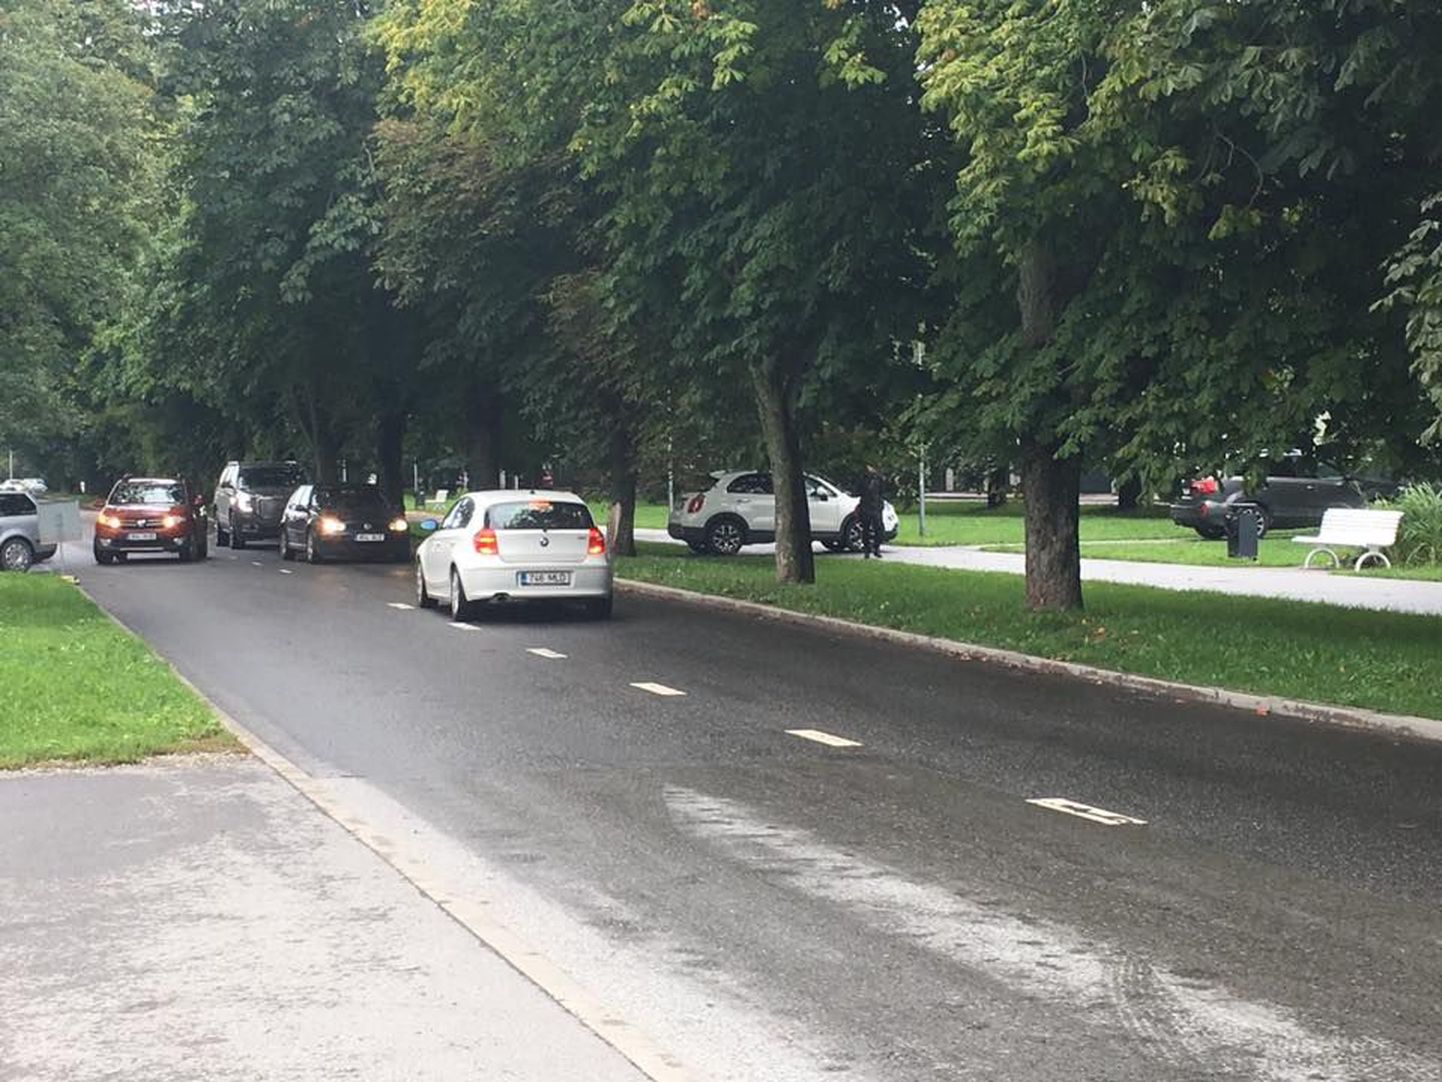 Житель Пельгулинна заметил, что в районе появились "новые автомобильные дороги" - водители едут по пешеходным дорогам.